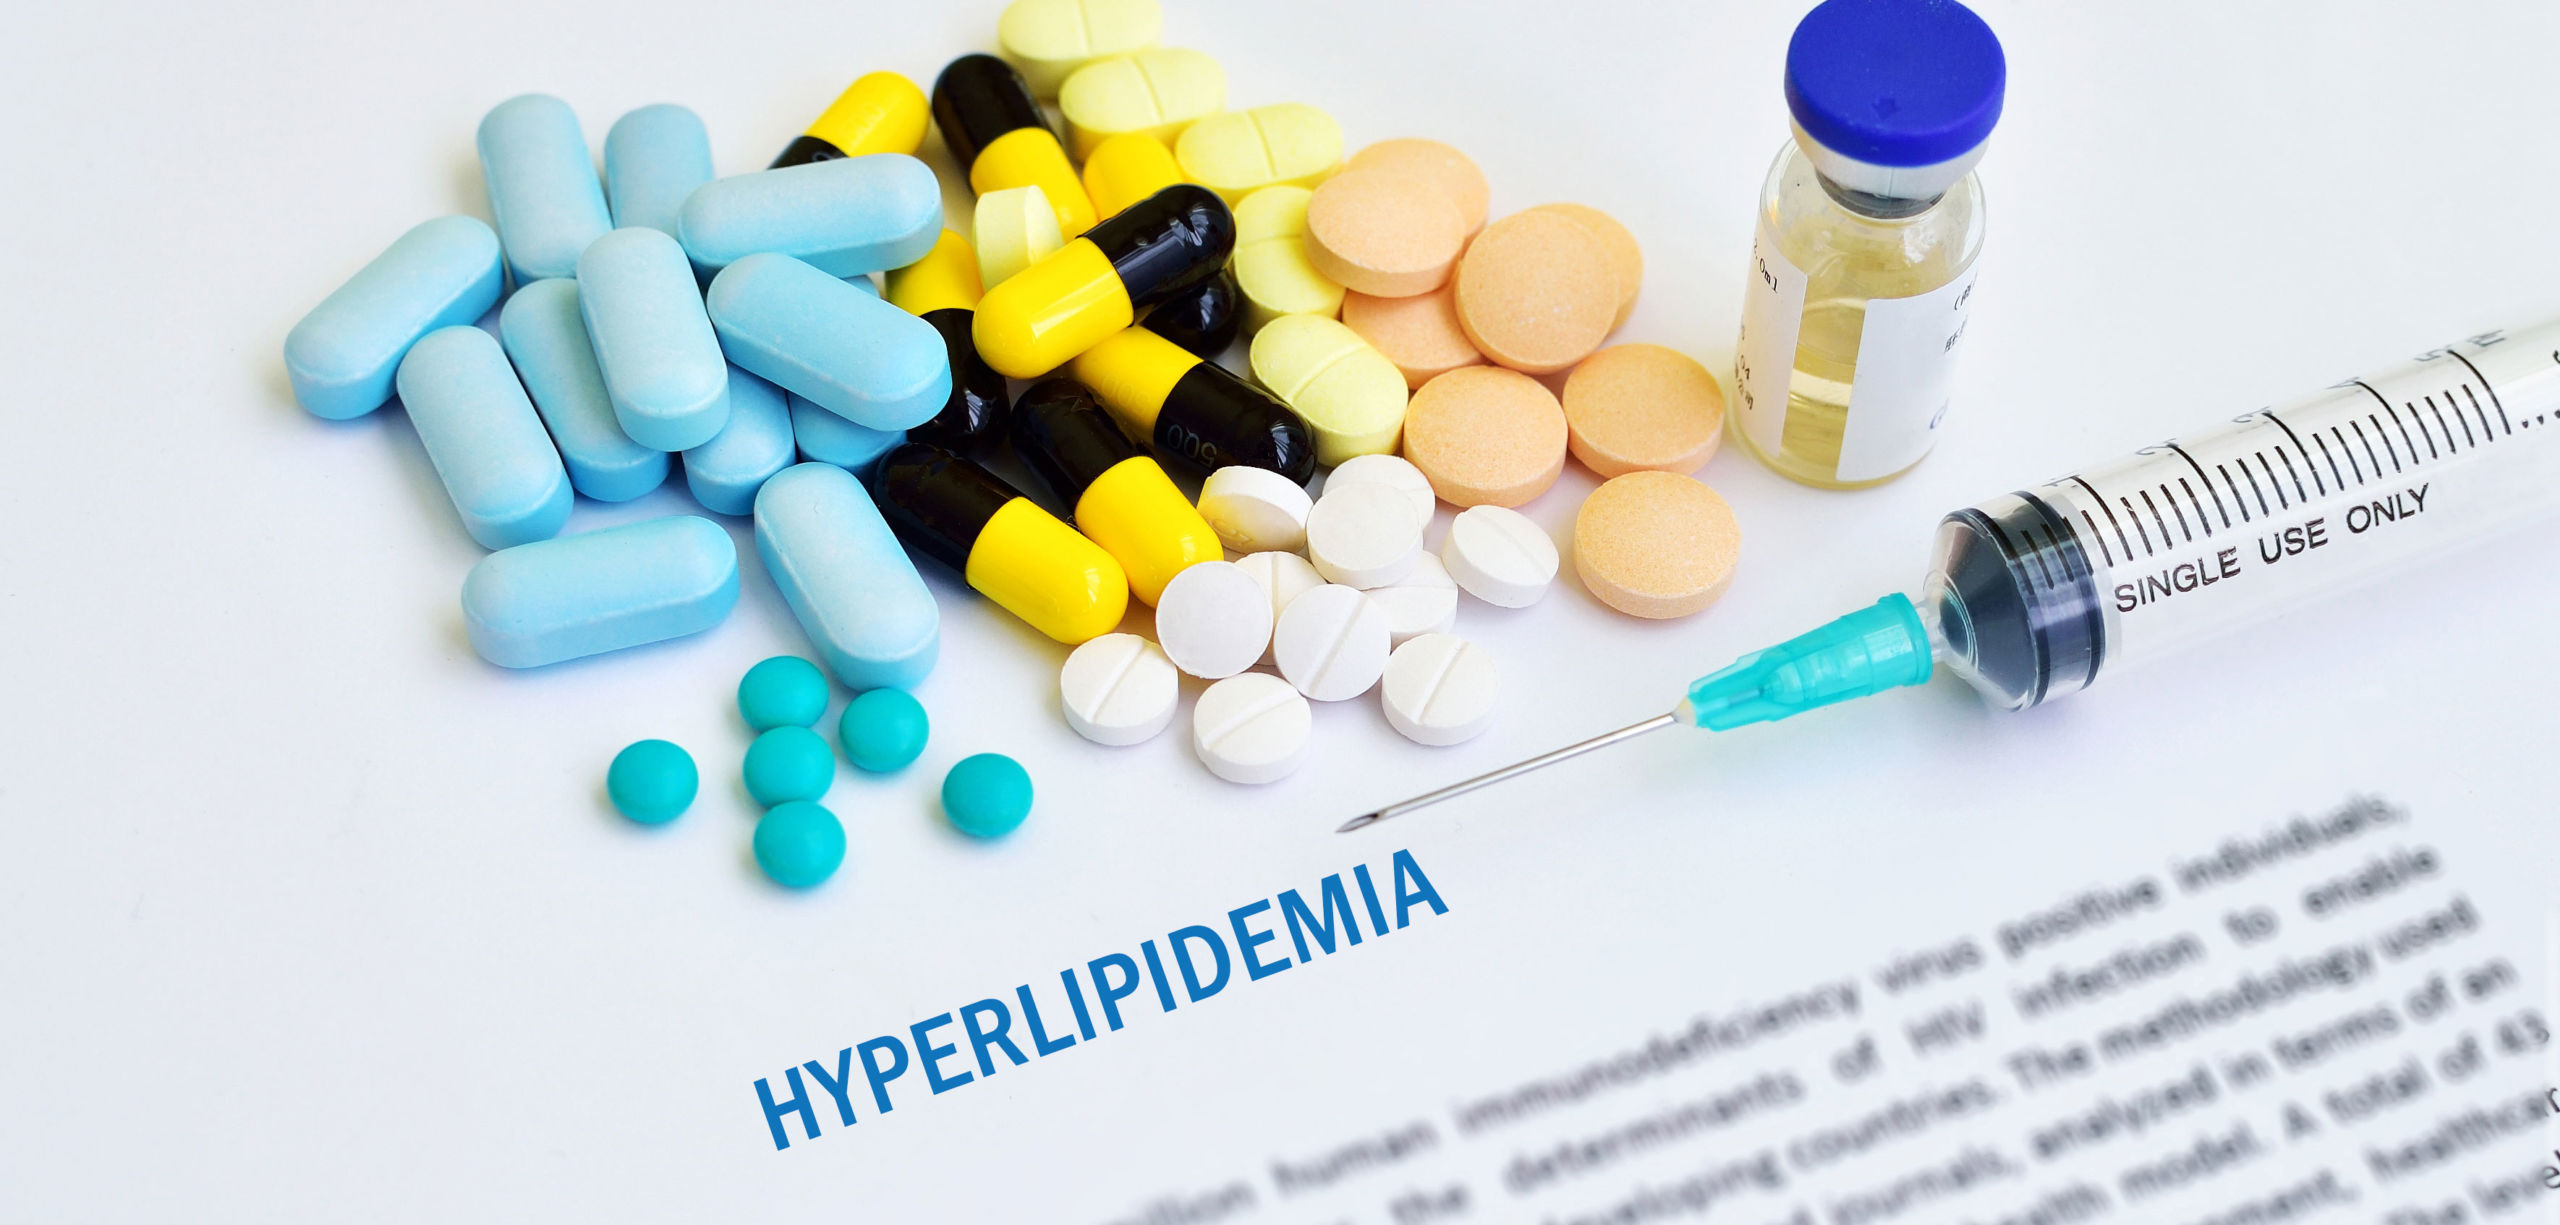 hyperlipidemia drugs market